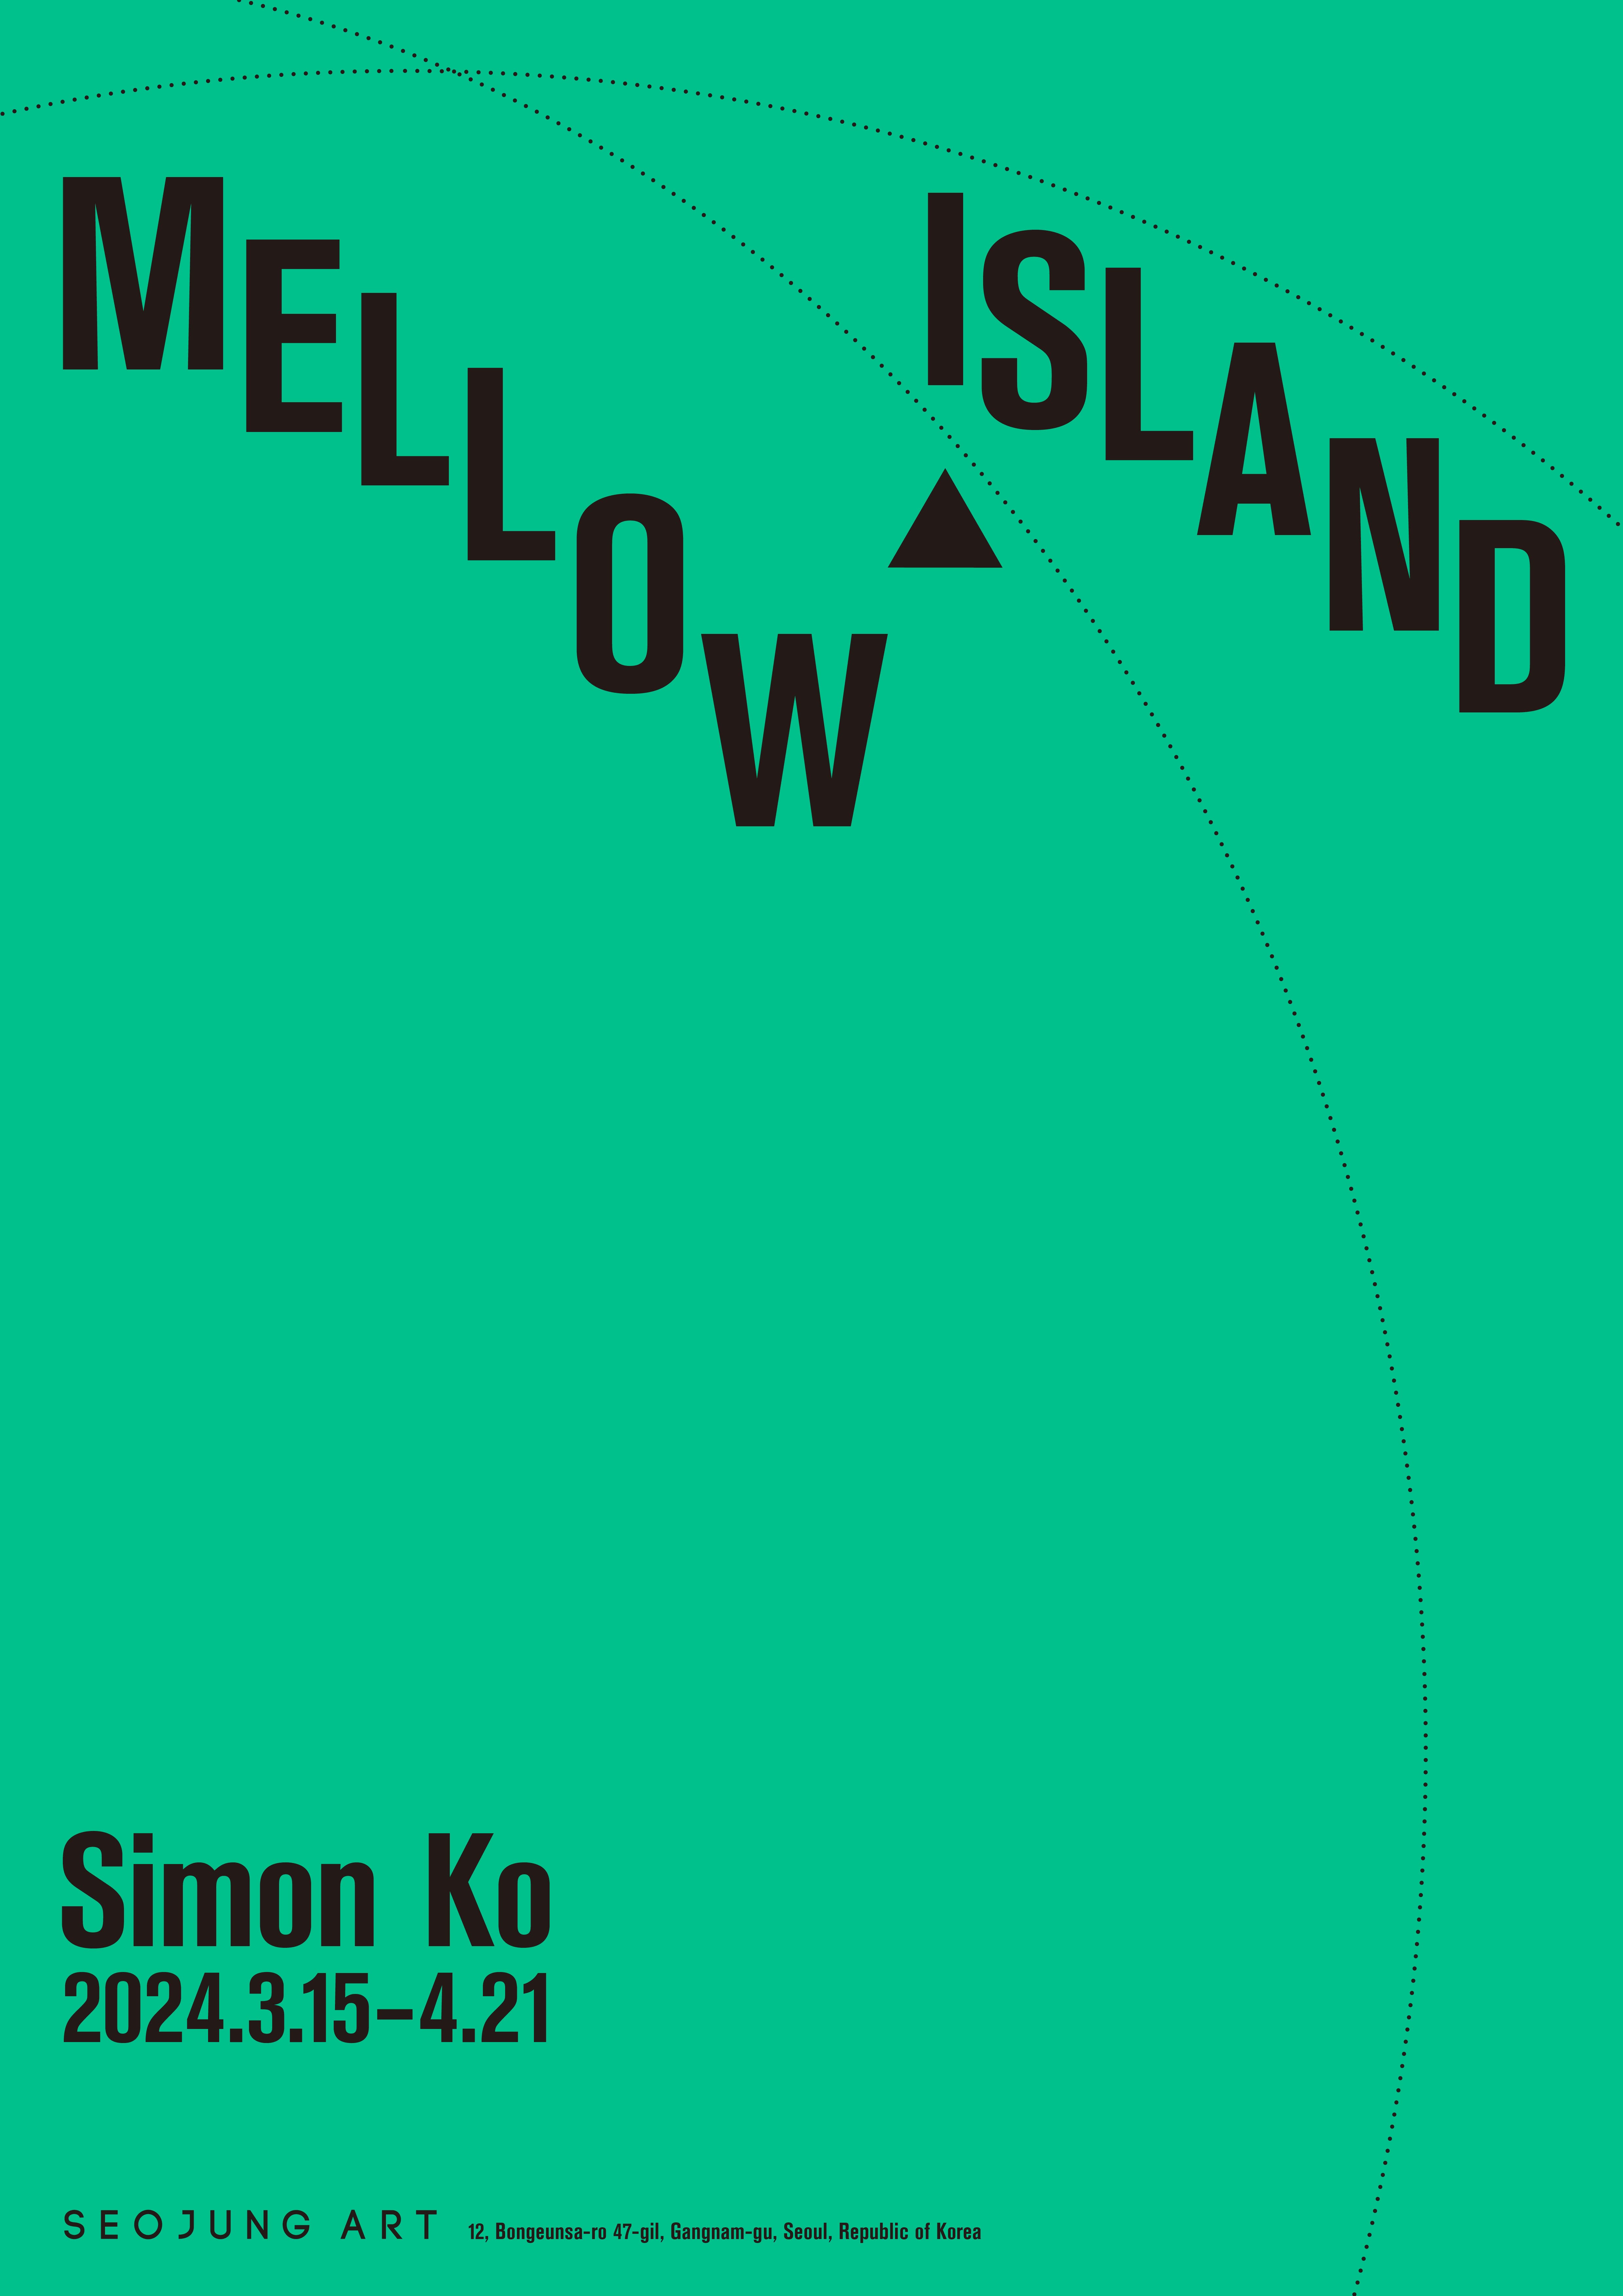 Mellow Island